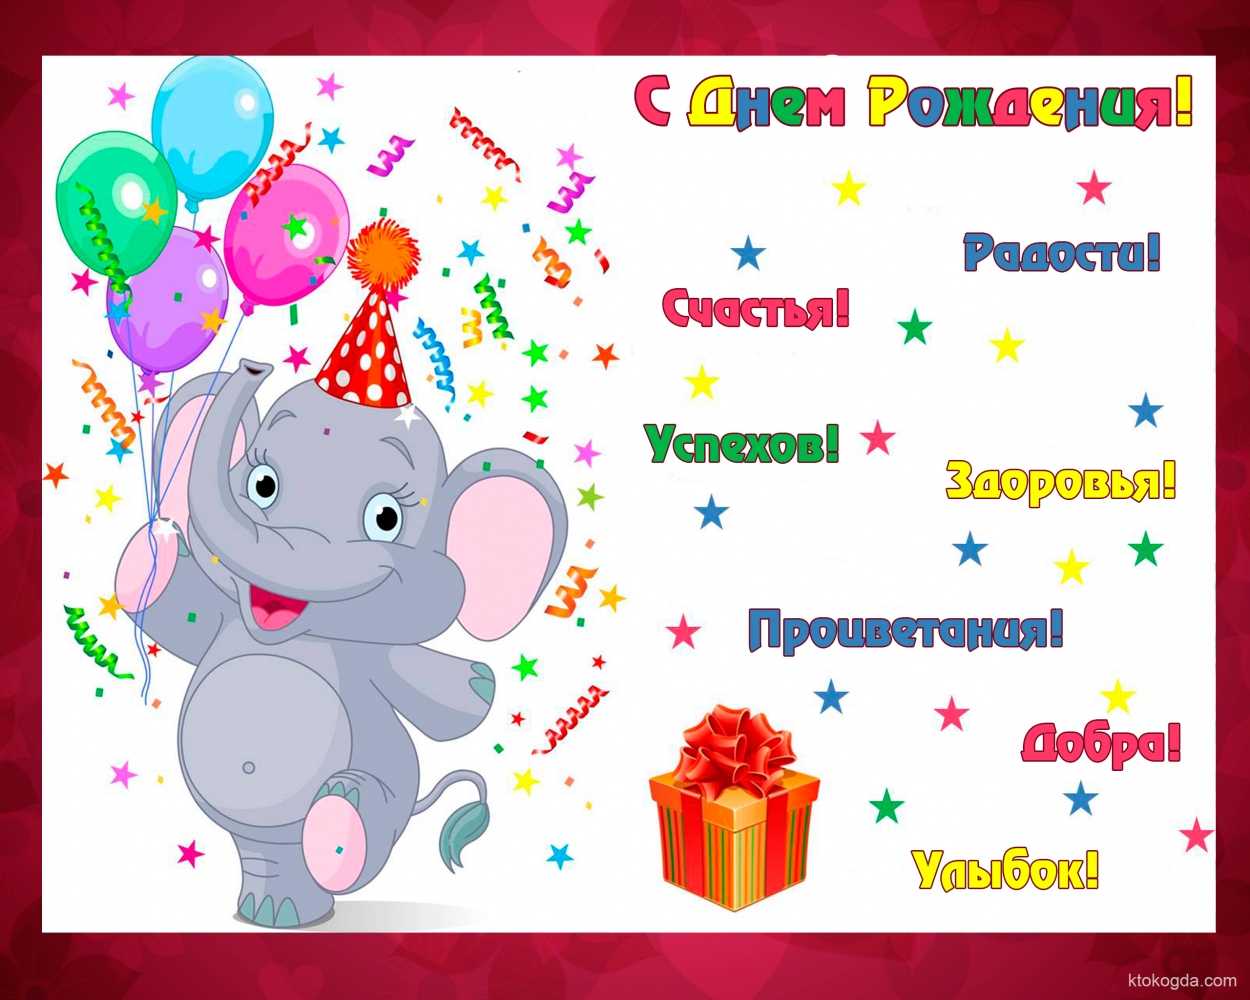 Поздравления С Днем Рождения Ярославе Девочке